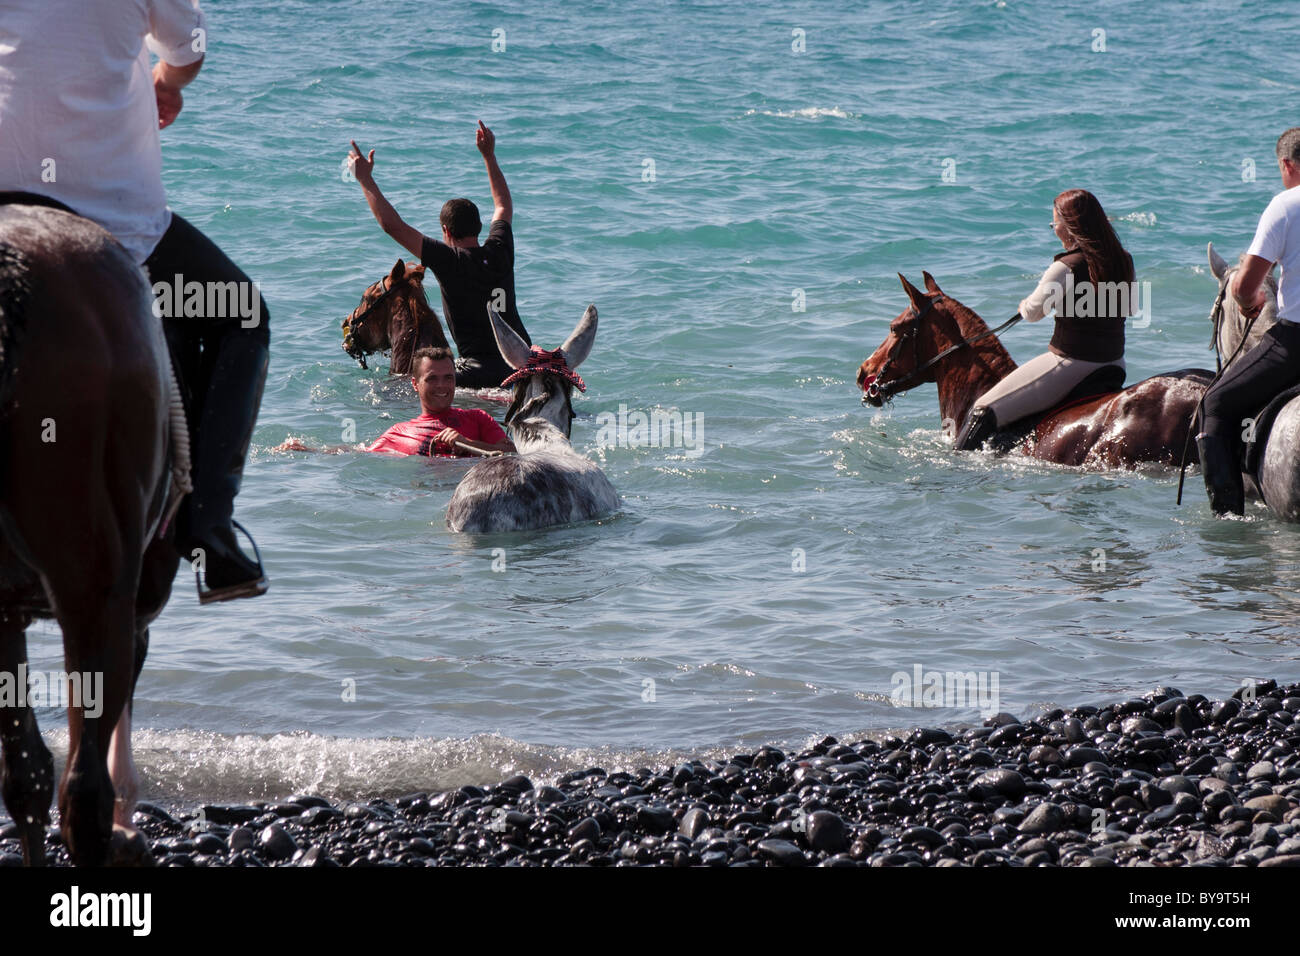 Piloti la balneazione i loro cavalli in mare a Adeje come parte dell'fiestas de San Sebastian, Tenerife, Isole Canarie, Spagna Foto Stock